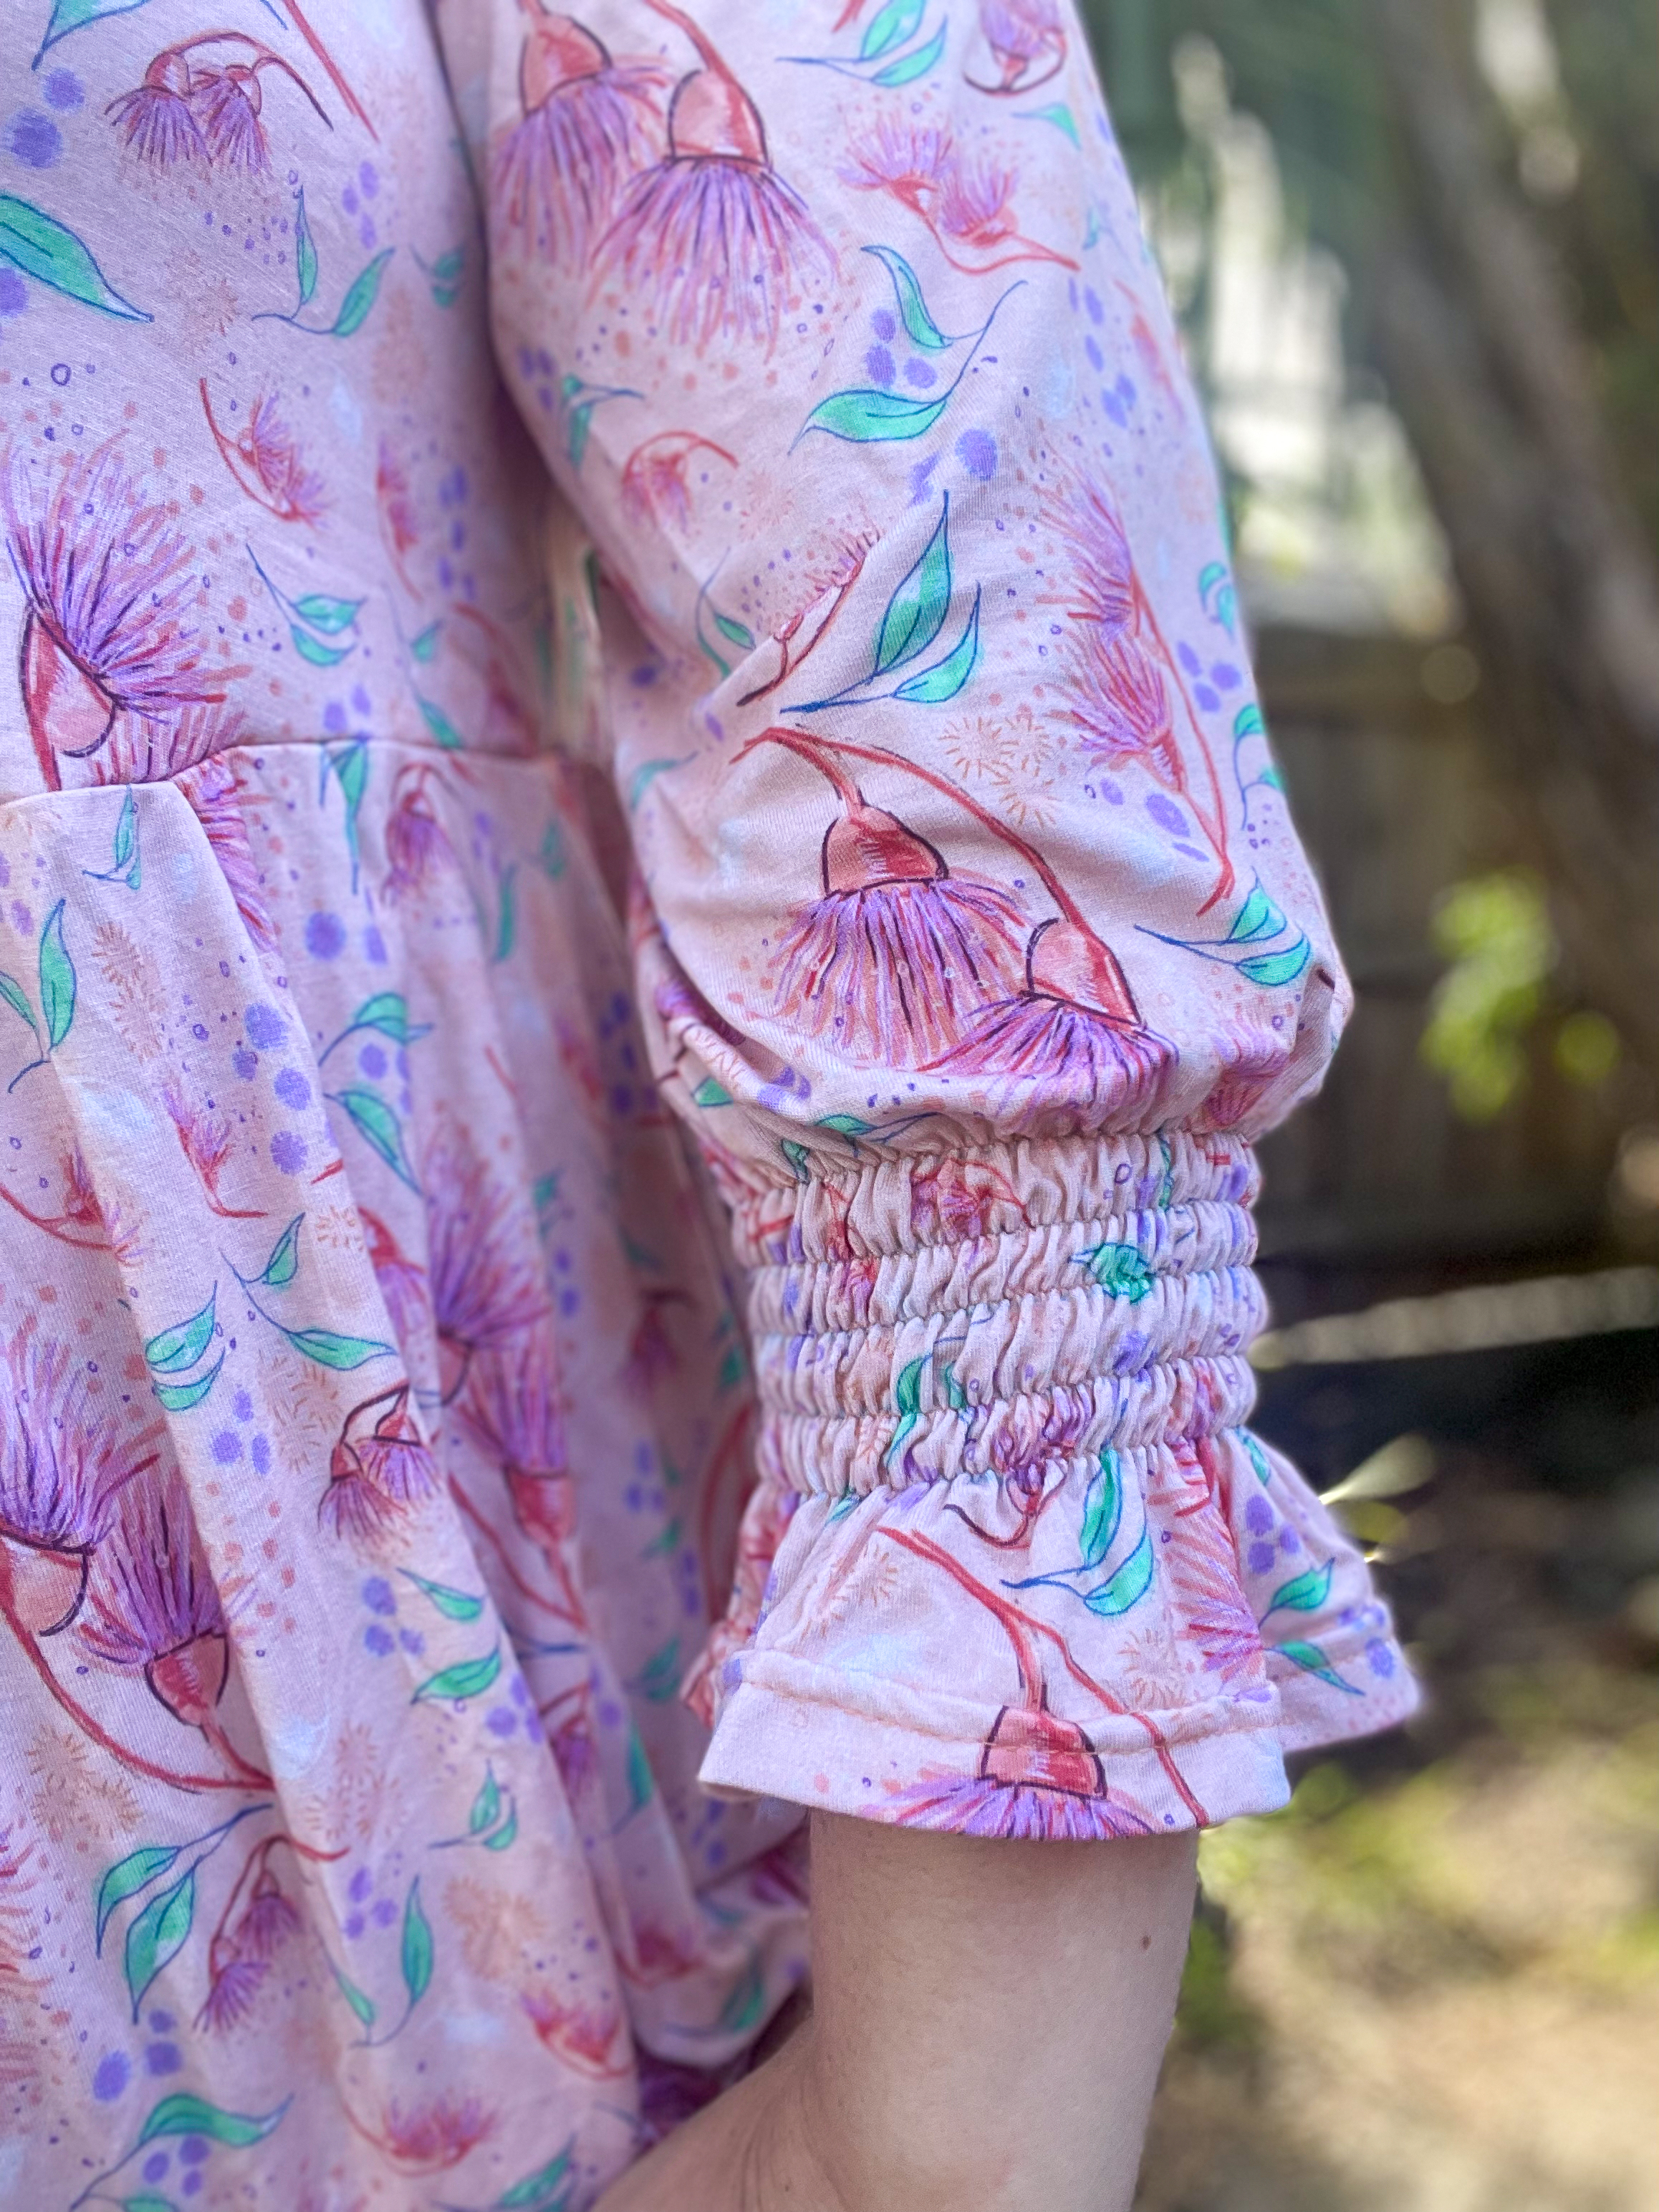 Diana Dress & Top Pattern by Ellie & Mac Pink floral top